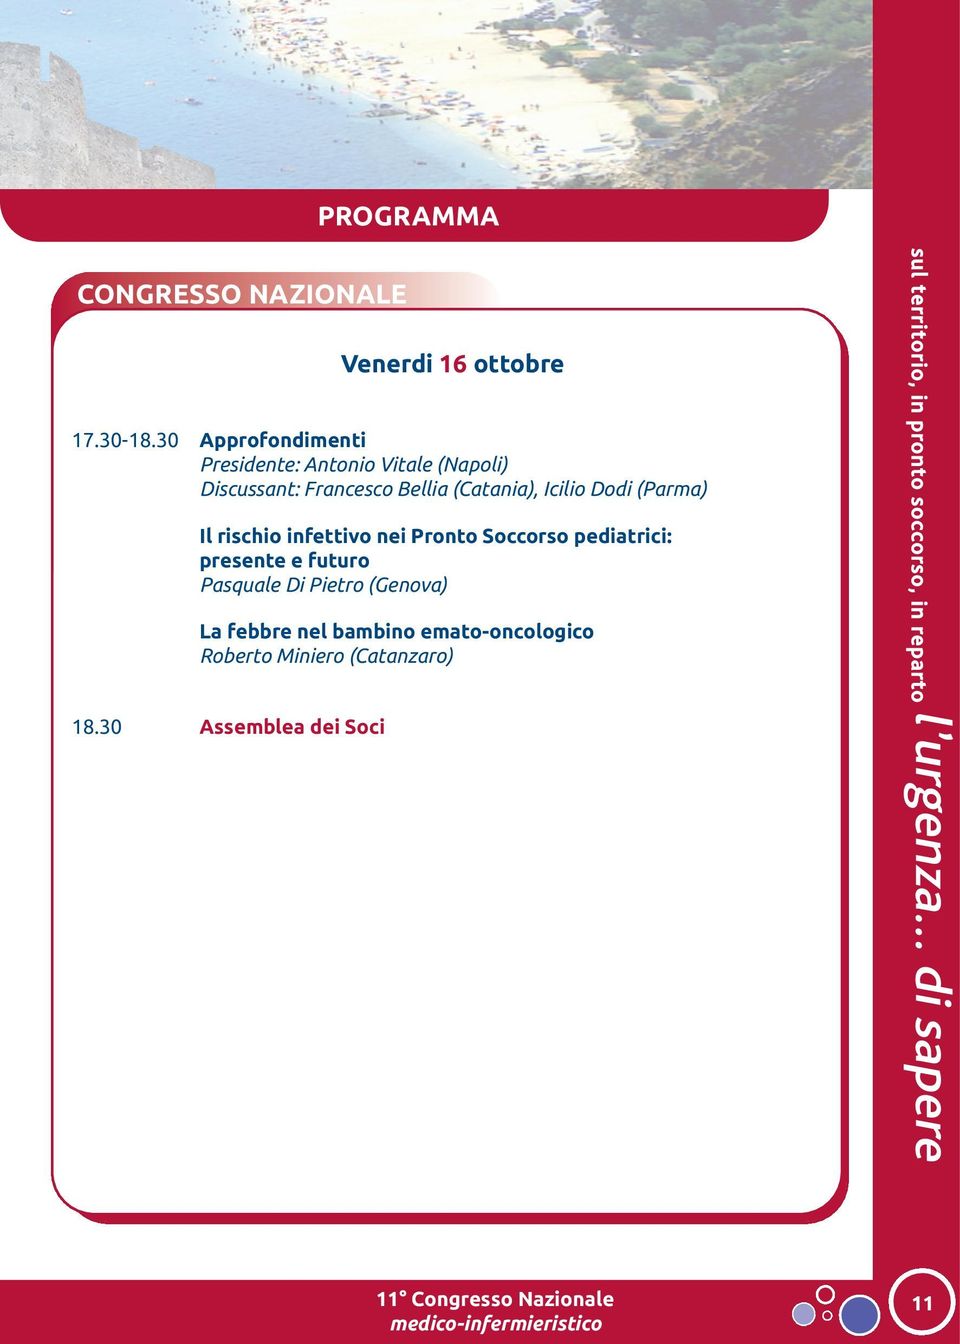 (Catania), Icilio Dodi (Parma) Il rischio infettivo nei Pronto Soccorso pediatrici: